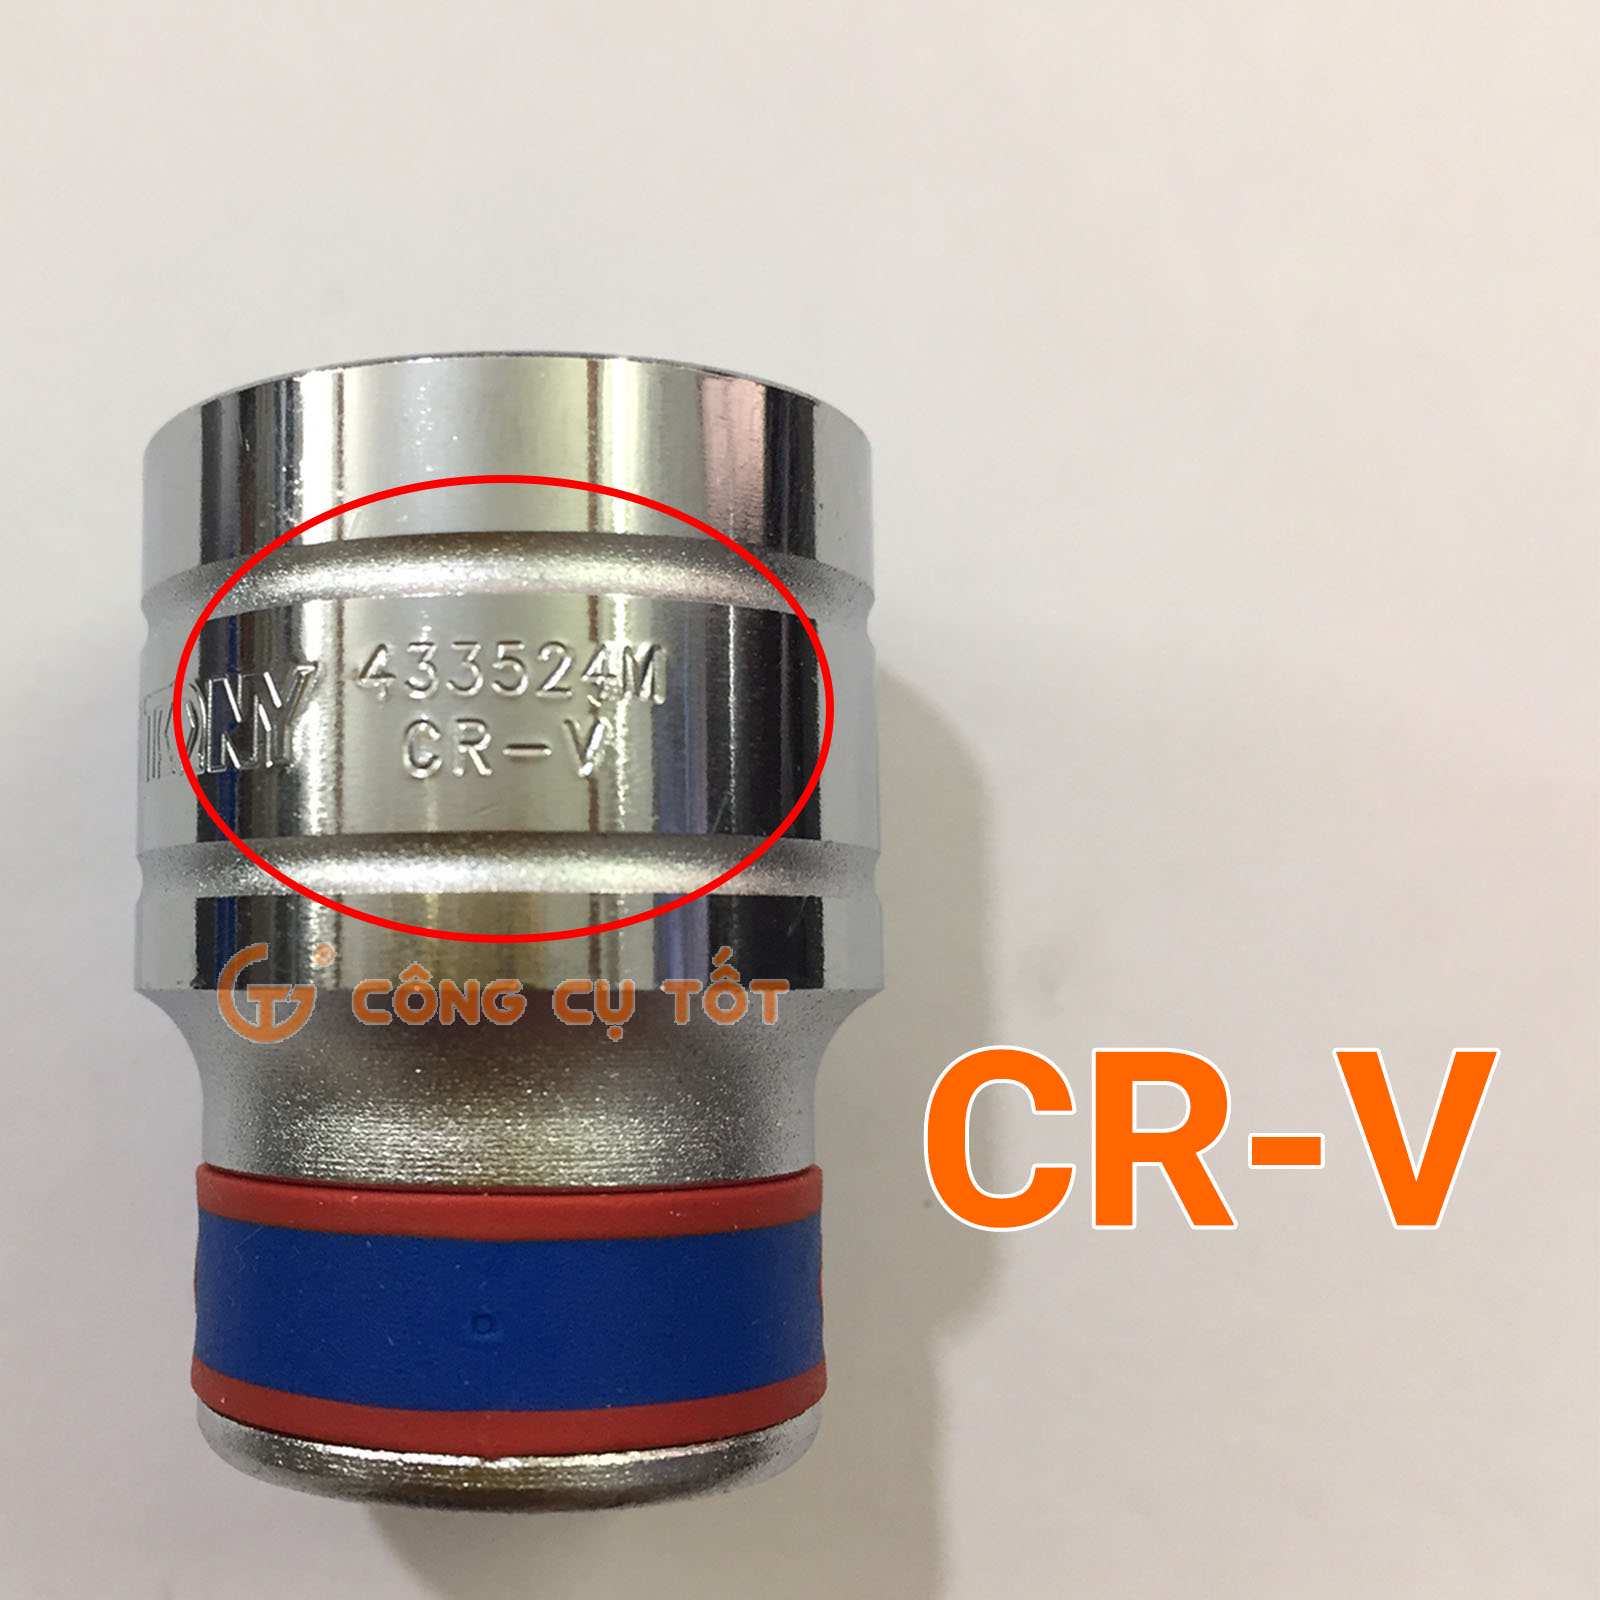 Chất liệu được làm từ thép Cr-V (Chrome Vanadium) hạn chế bị han gỉ và có khả năng chống chịu lớn